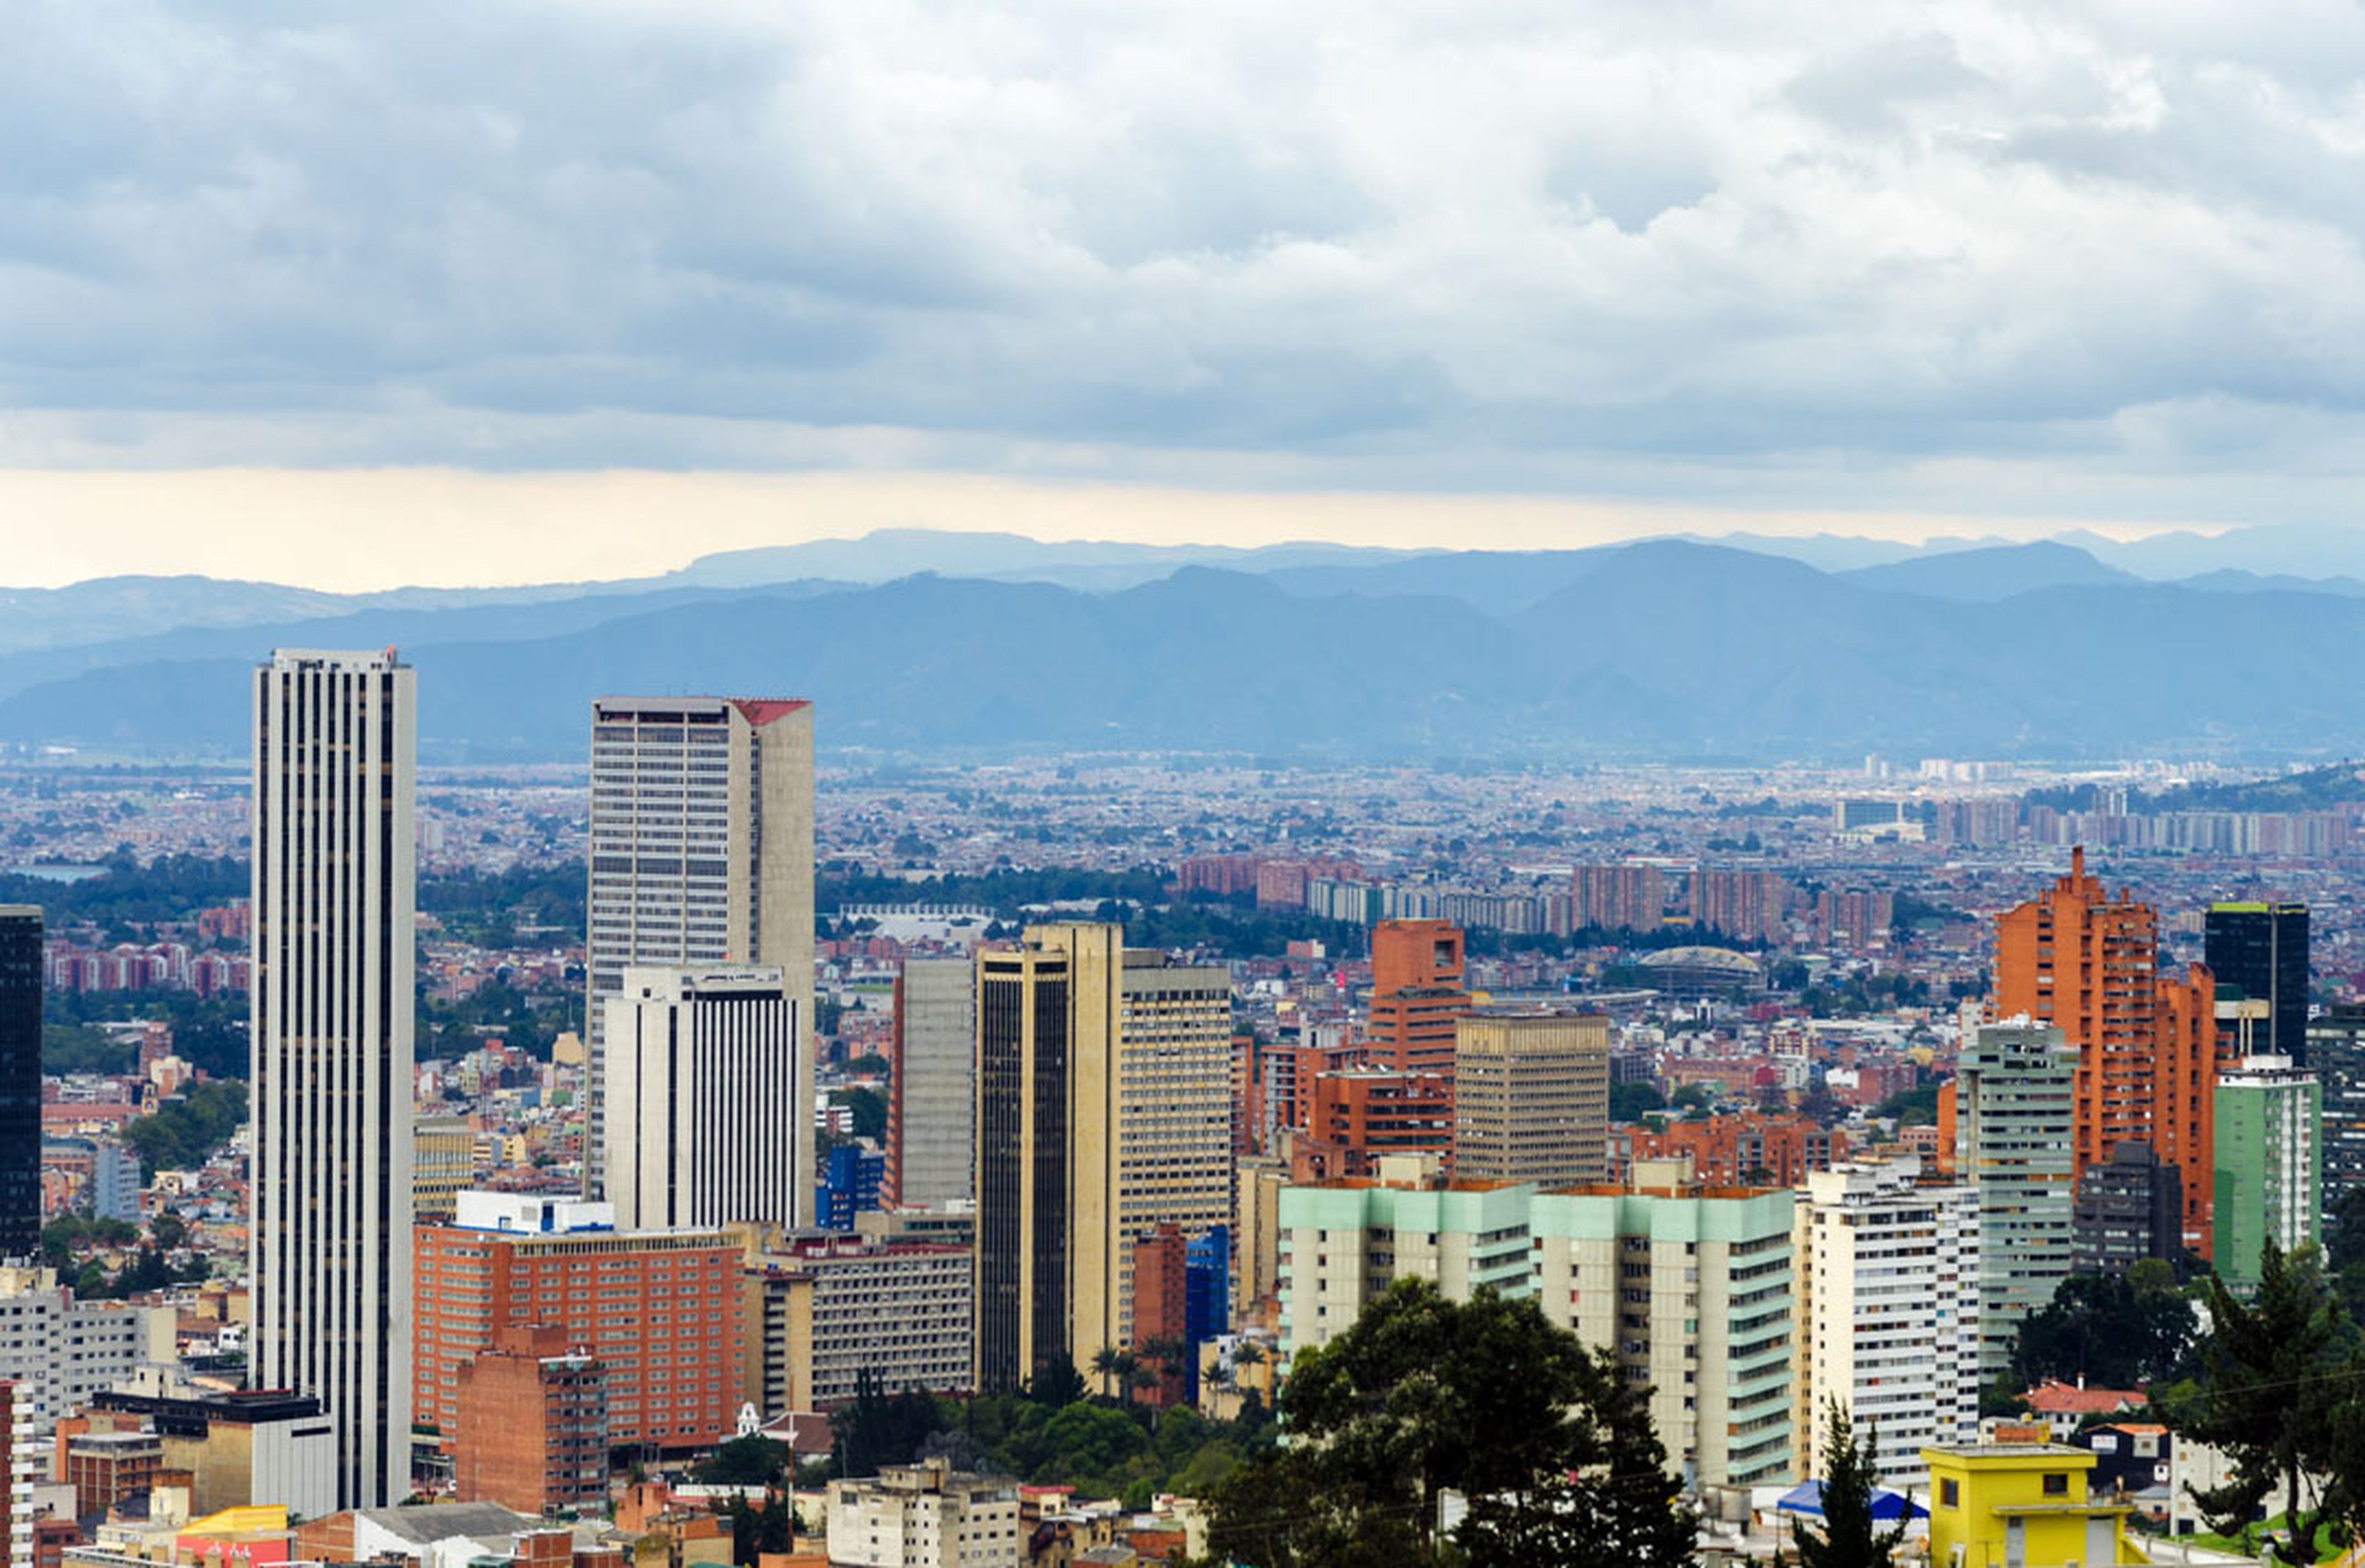 Bogotá Colombia